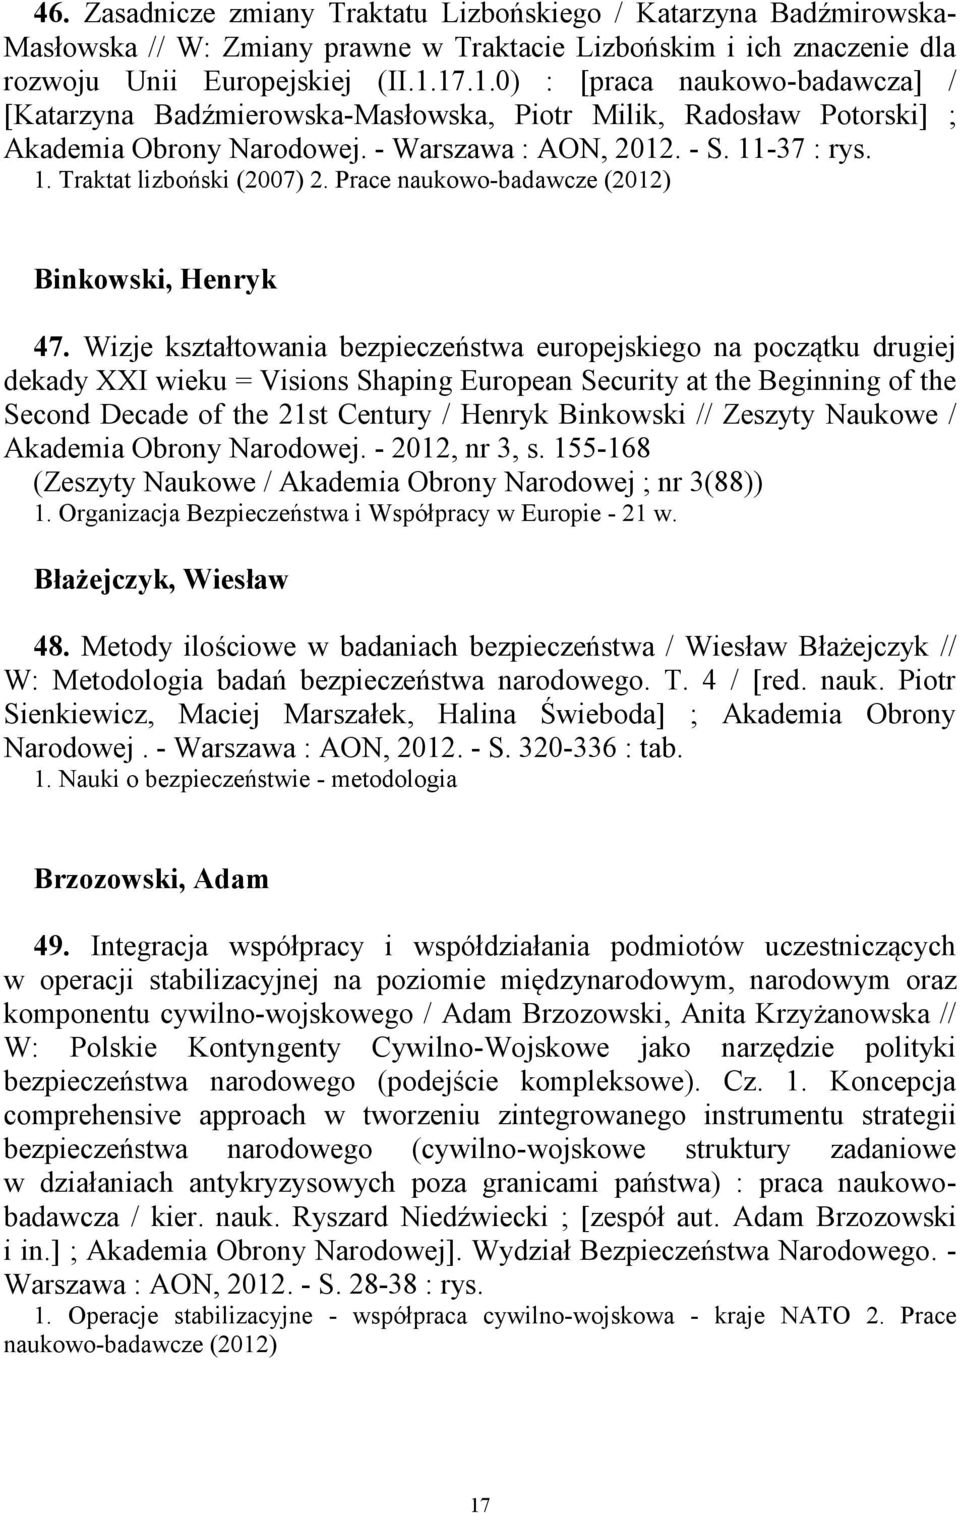 Prace naukowo-badawcze (2012) Binkowski, Henryk 47.